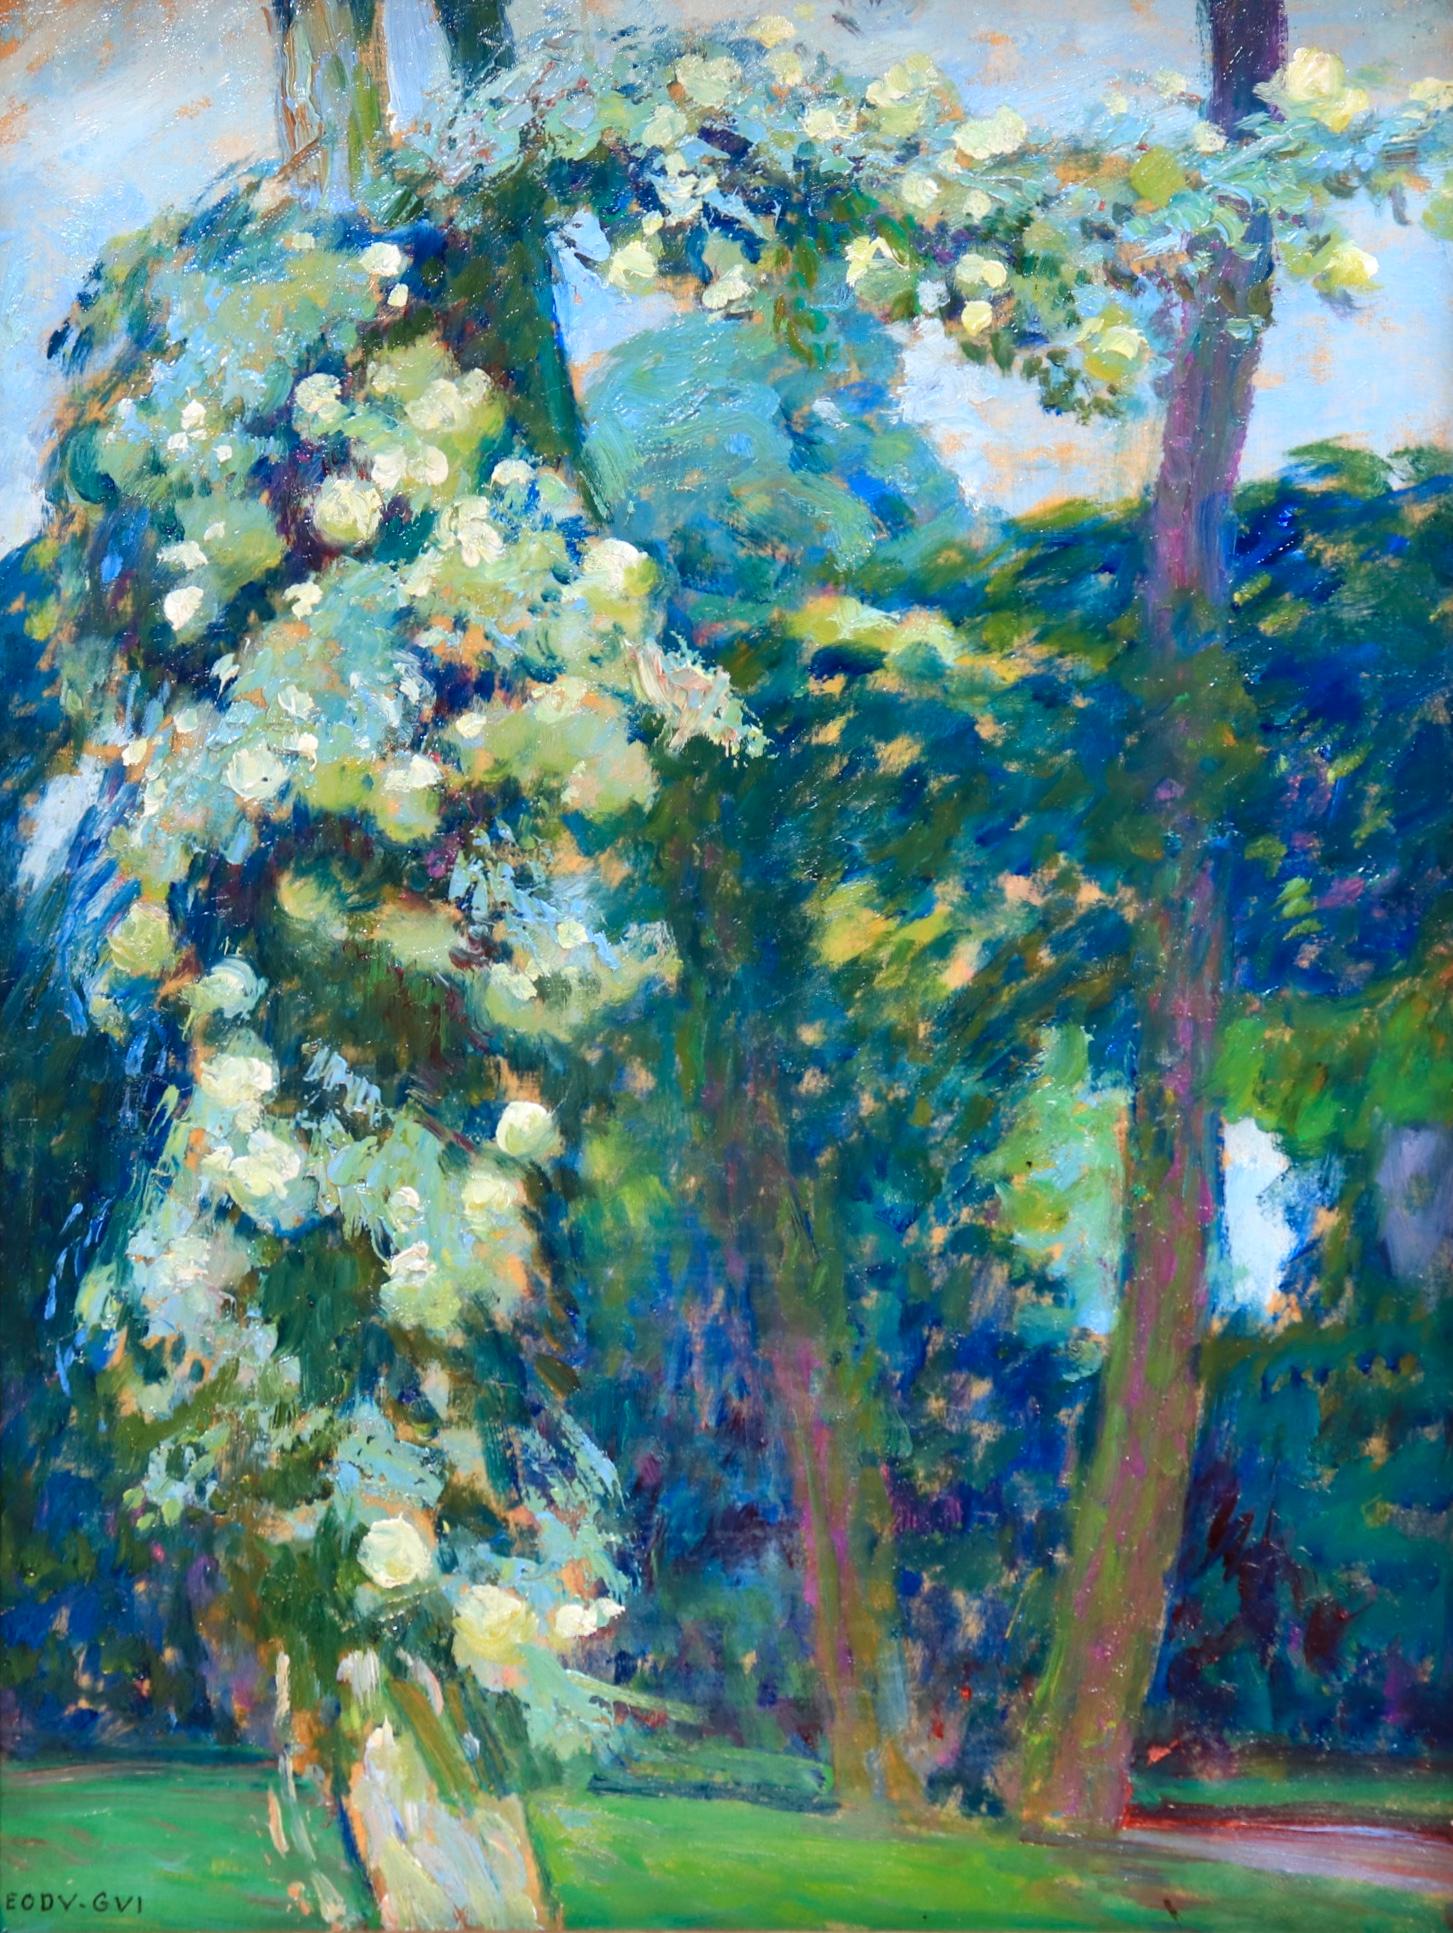 Octave Guillonnet Landscape Painting - Arbres en fleurs - Post Impressionist Oil, Trees in Landscape by EODV Guillonnet